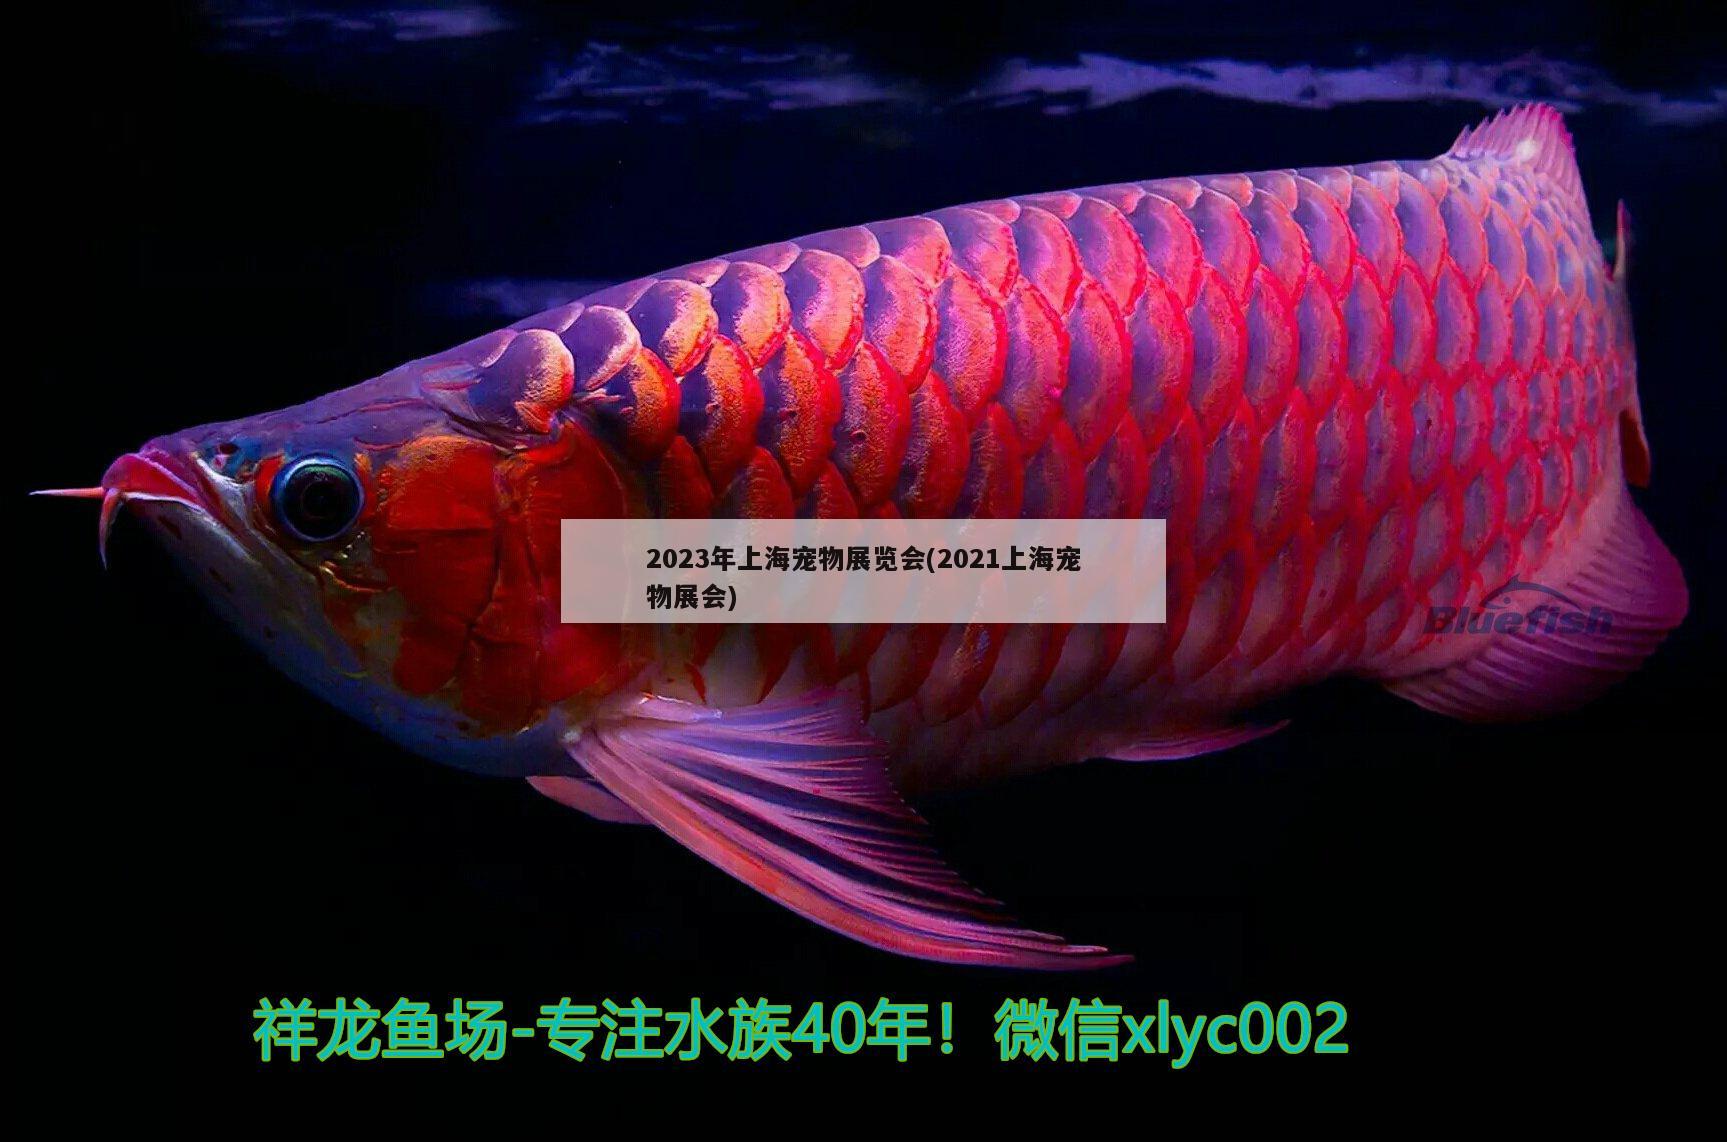 2023年上海宠物展览会(2021上海宠物展会) 第27届cips长城杯宠物水族博览会cips2023